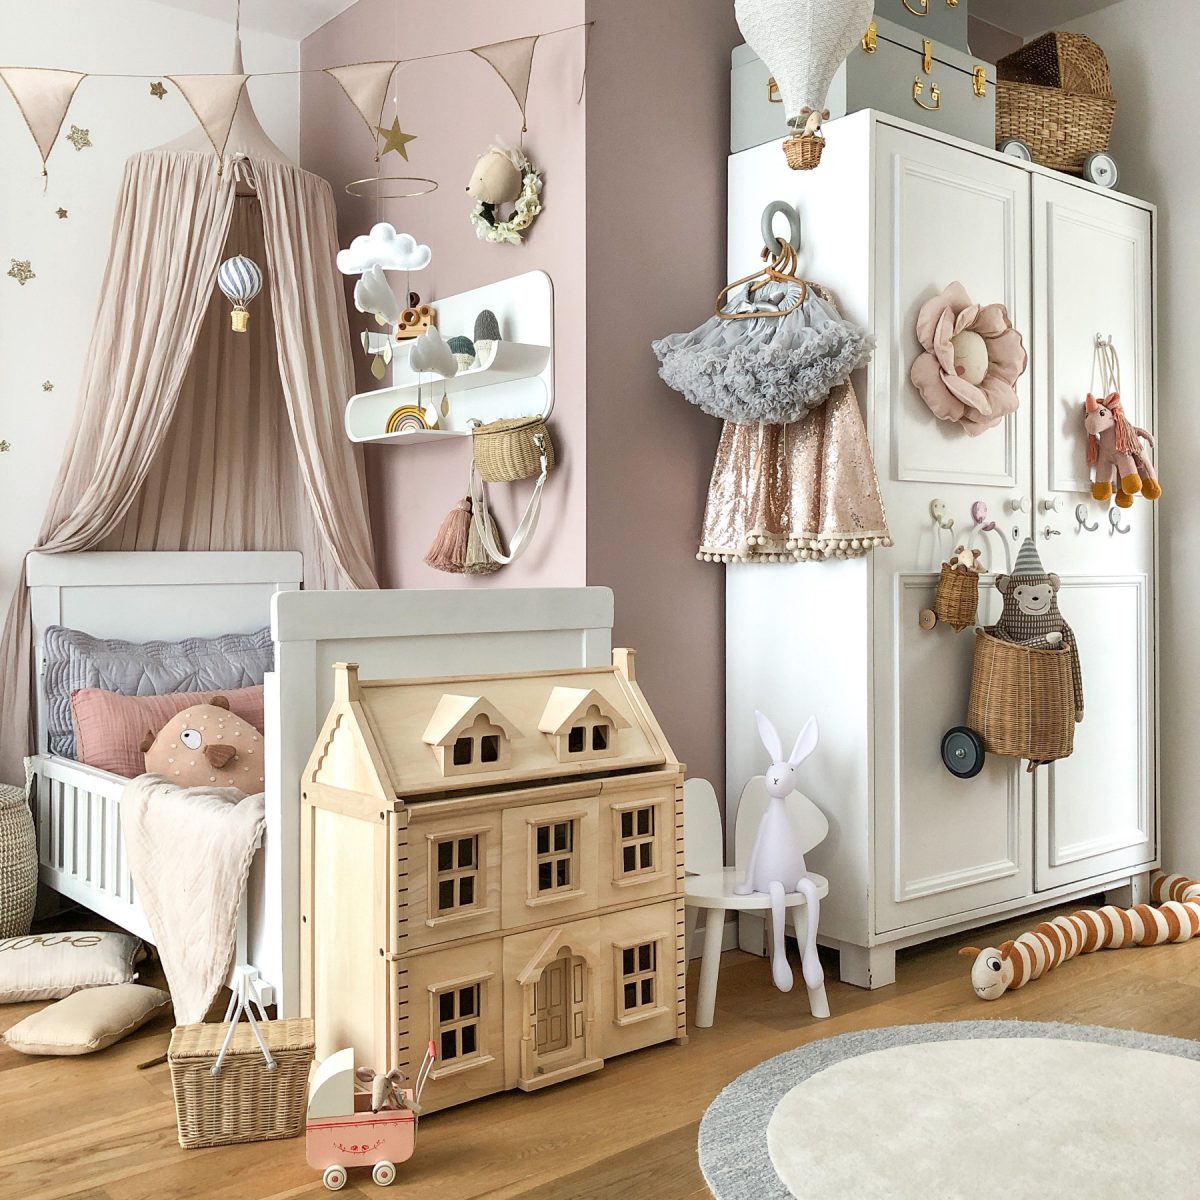 Fantasyroom Blog: Die schönsten Instagram Kinderzimmer - Mädchenzimmer in Naturtönen mit Puppenhaus